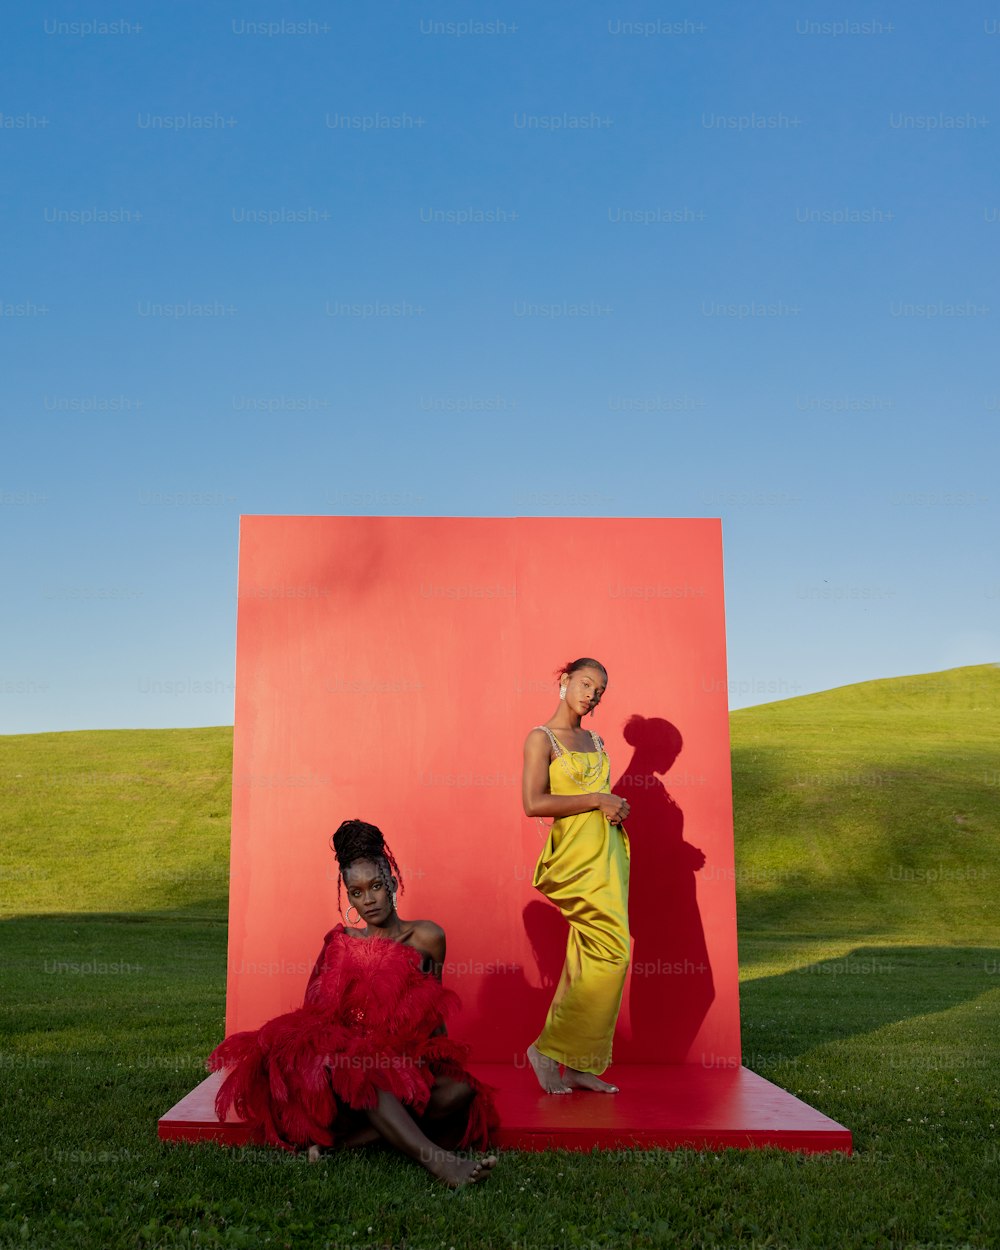 Una mujer con un vestido amarillo sentada junto a una mujer con un vestido rojo